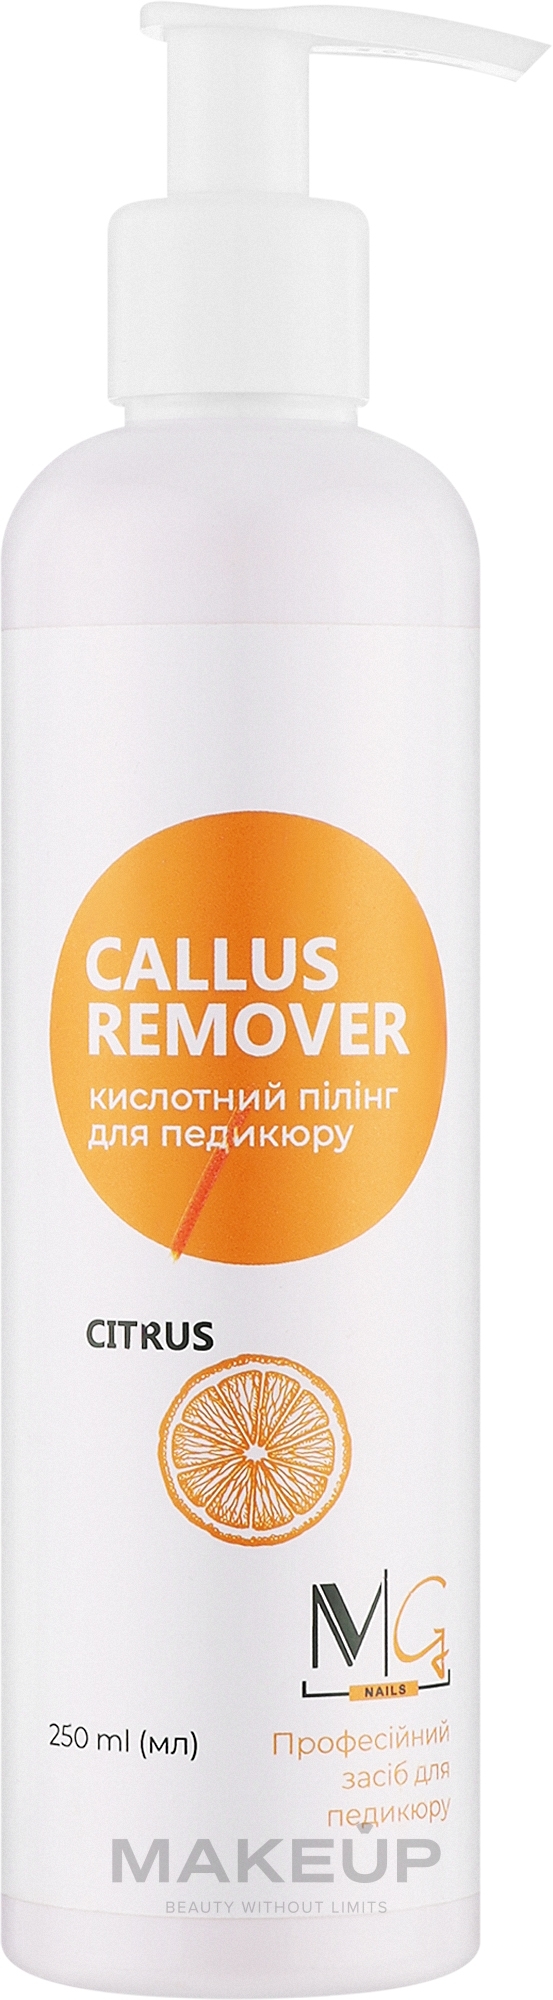 Кислотный пилинг для педикюра "Citrus" - MG Callus Remover — фото 250ml